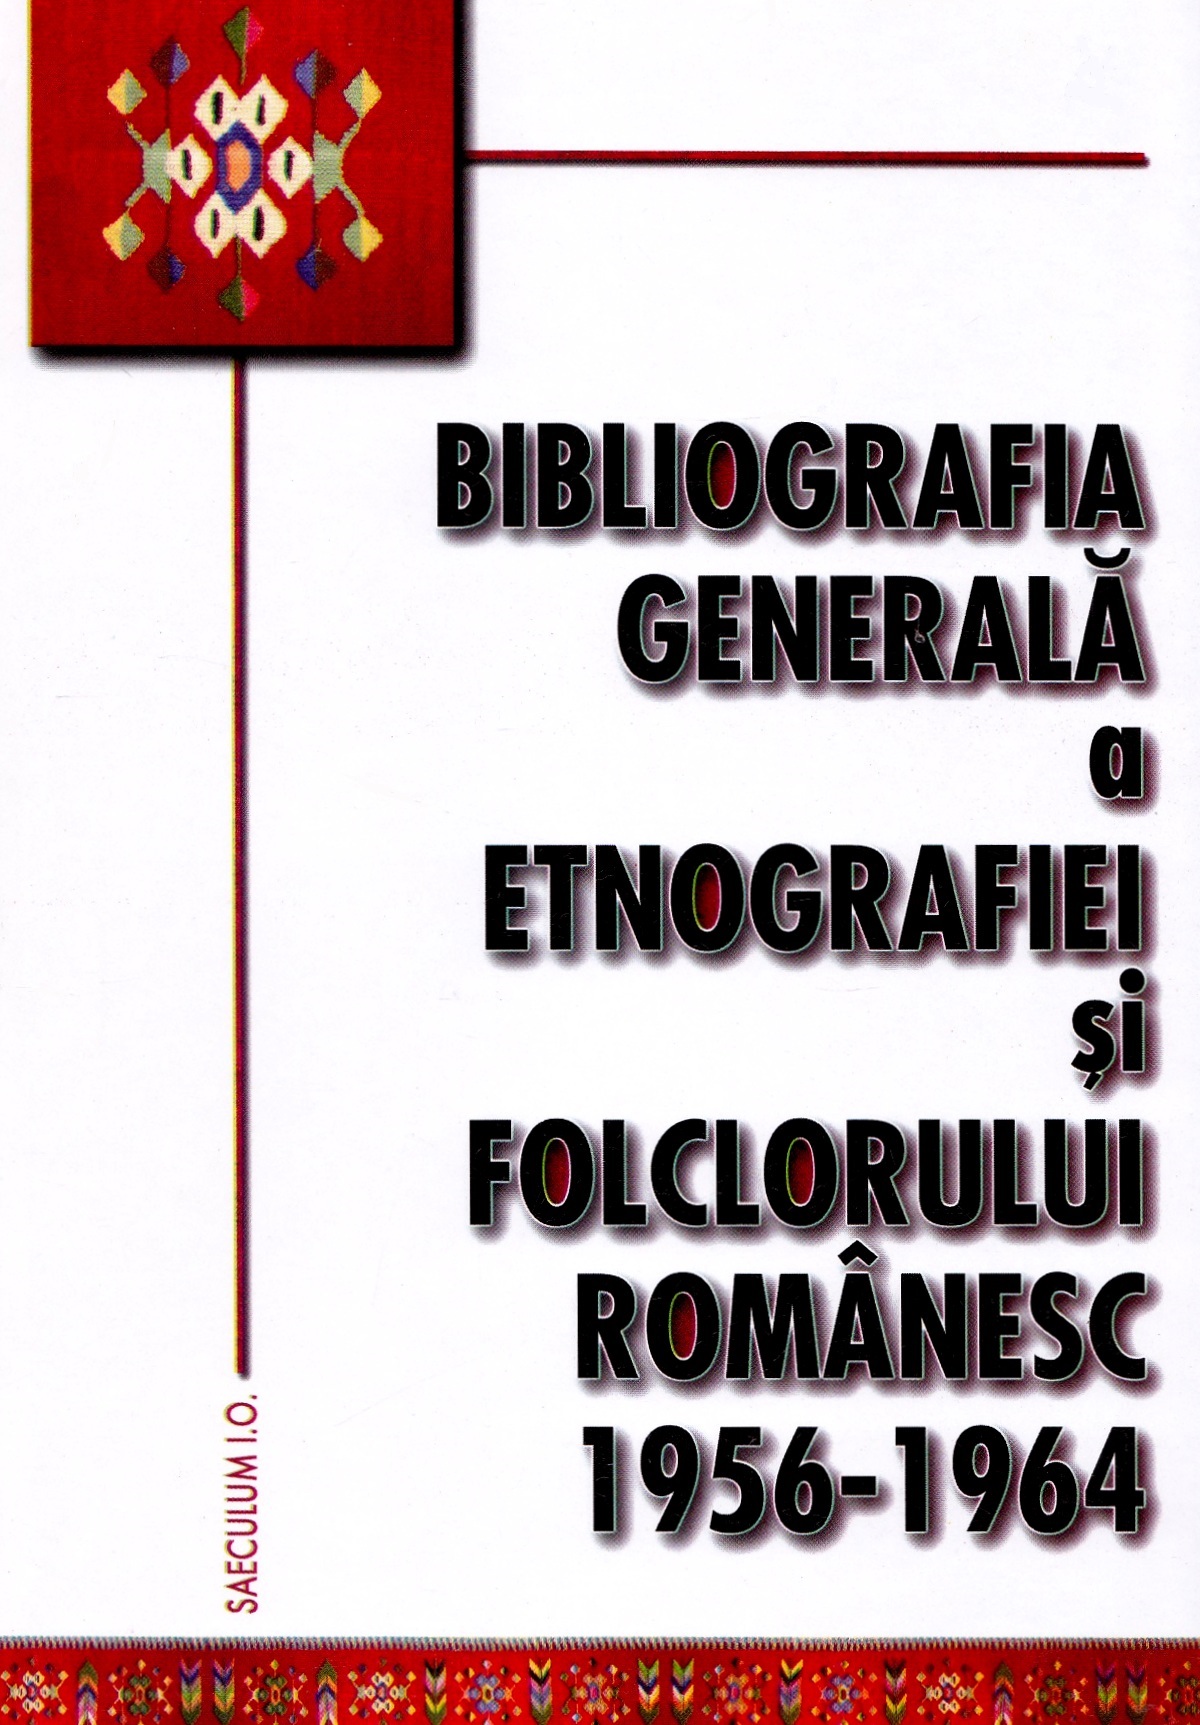 Bibliografia generala a etnografiei si folclorului romanesc 1956-1964